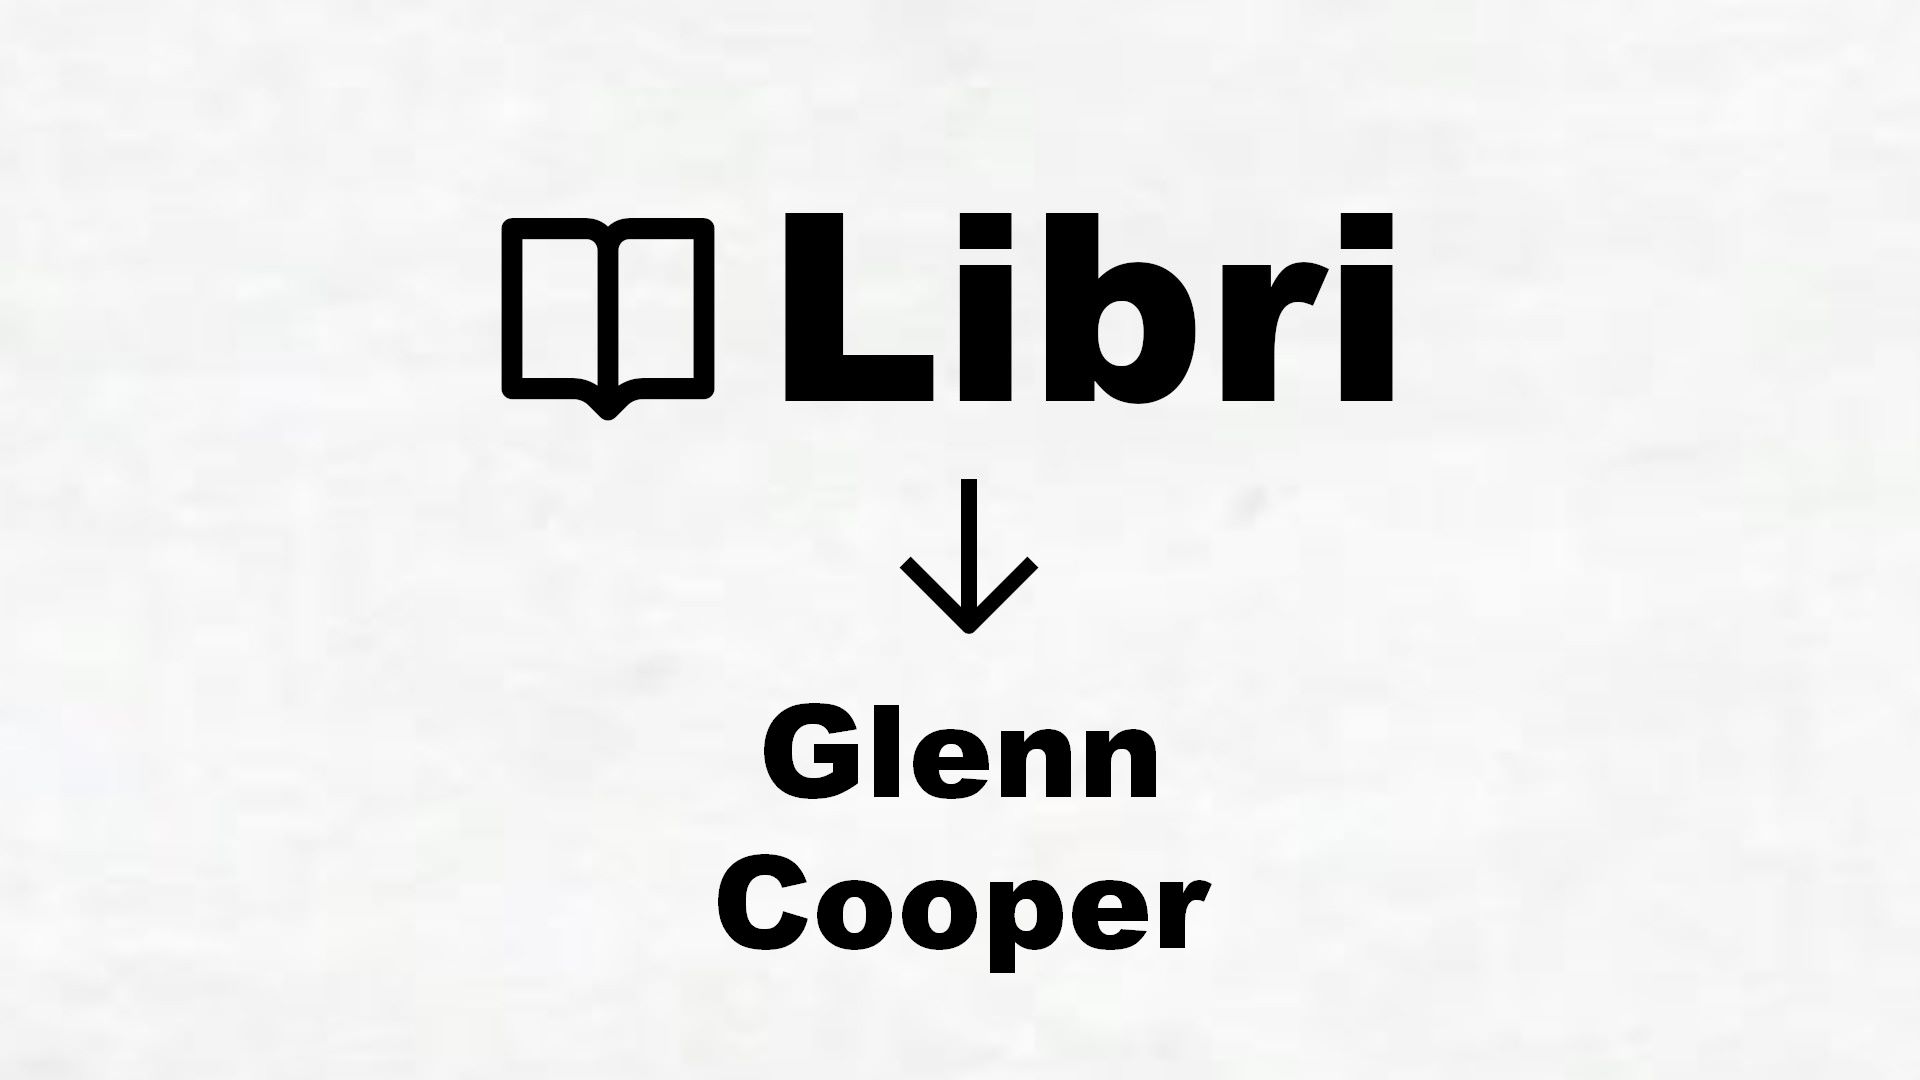 Glenn Cooper Tutti i libri dell'autore in classifica